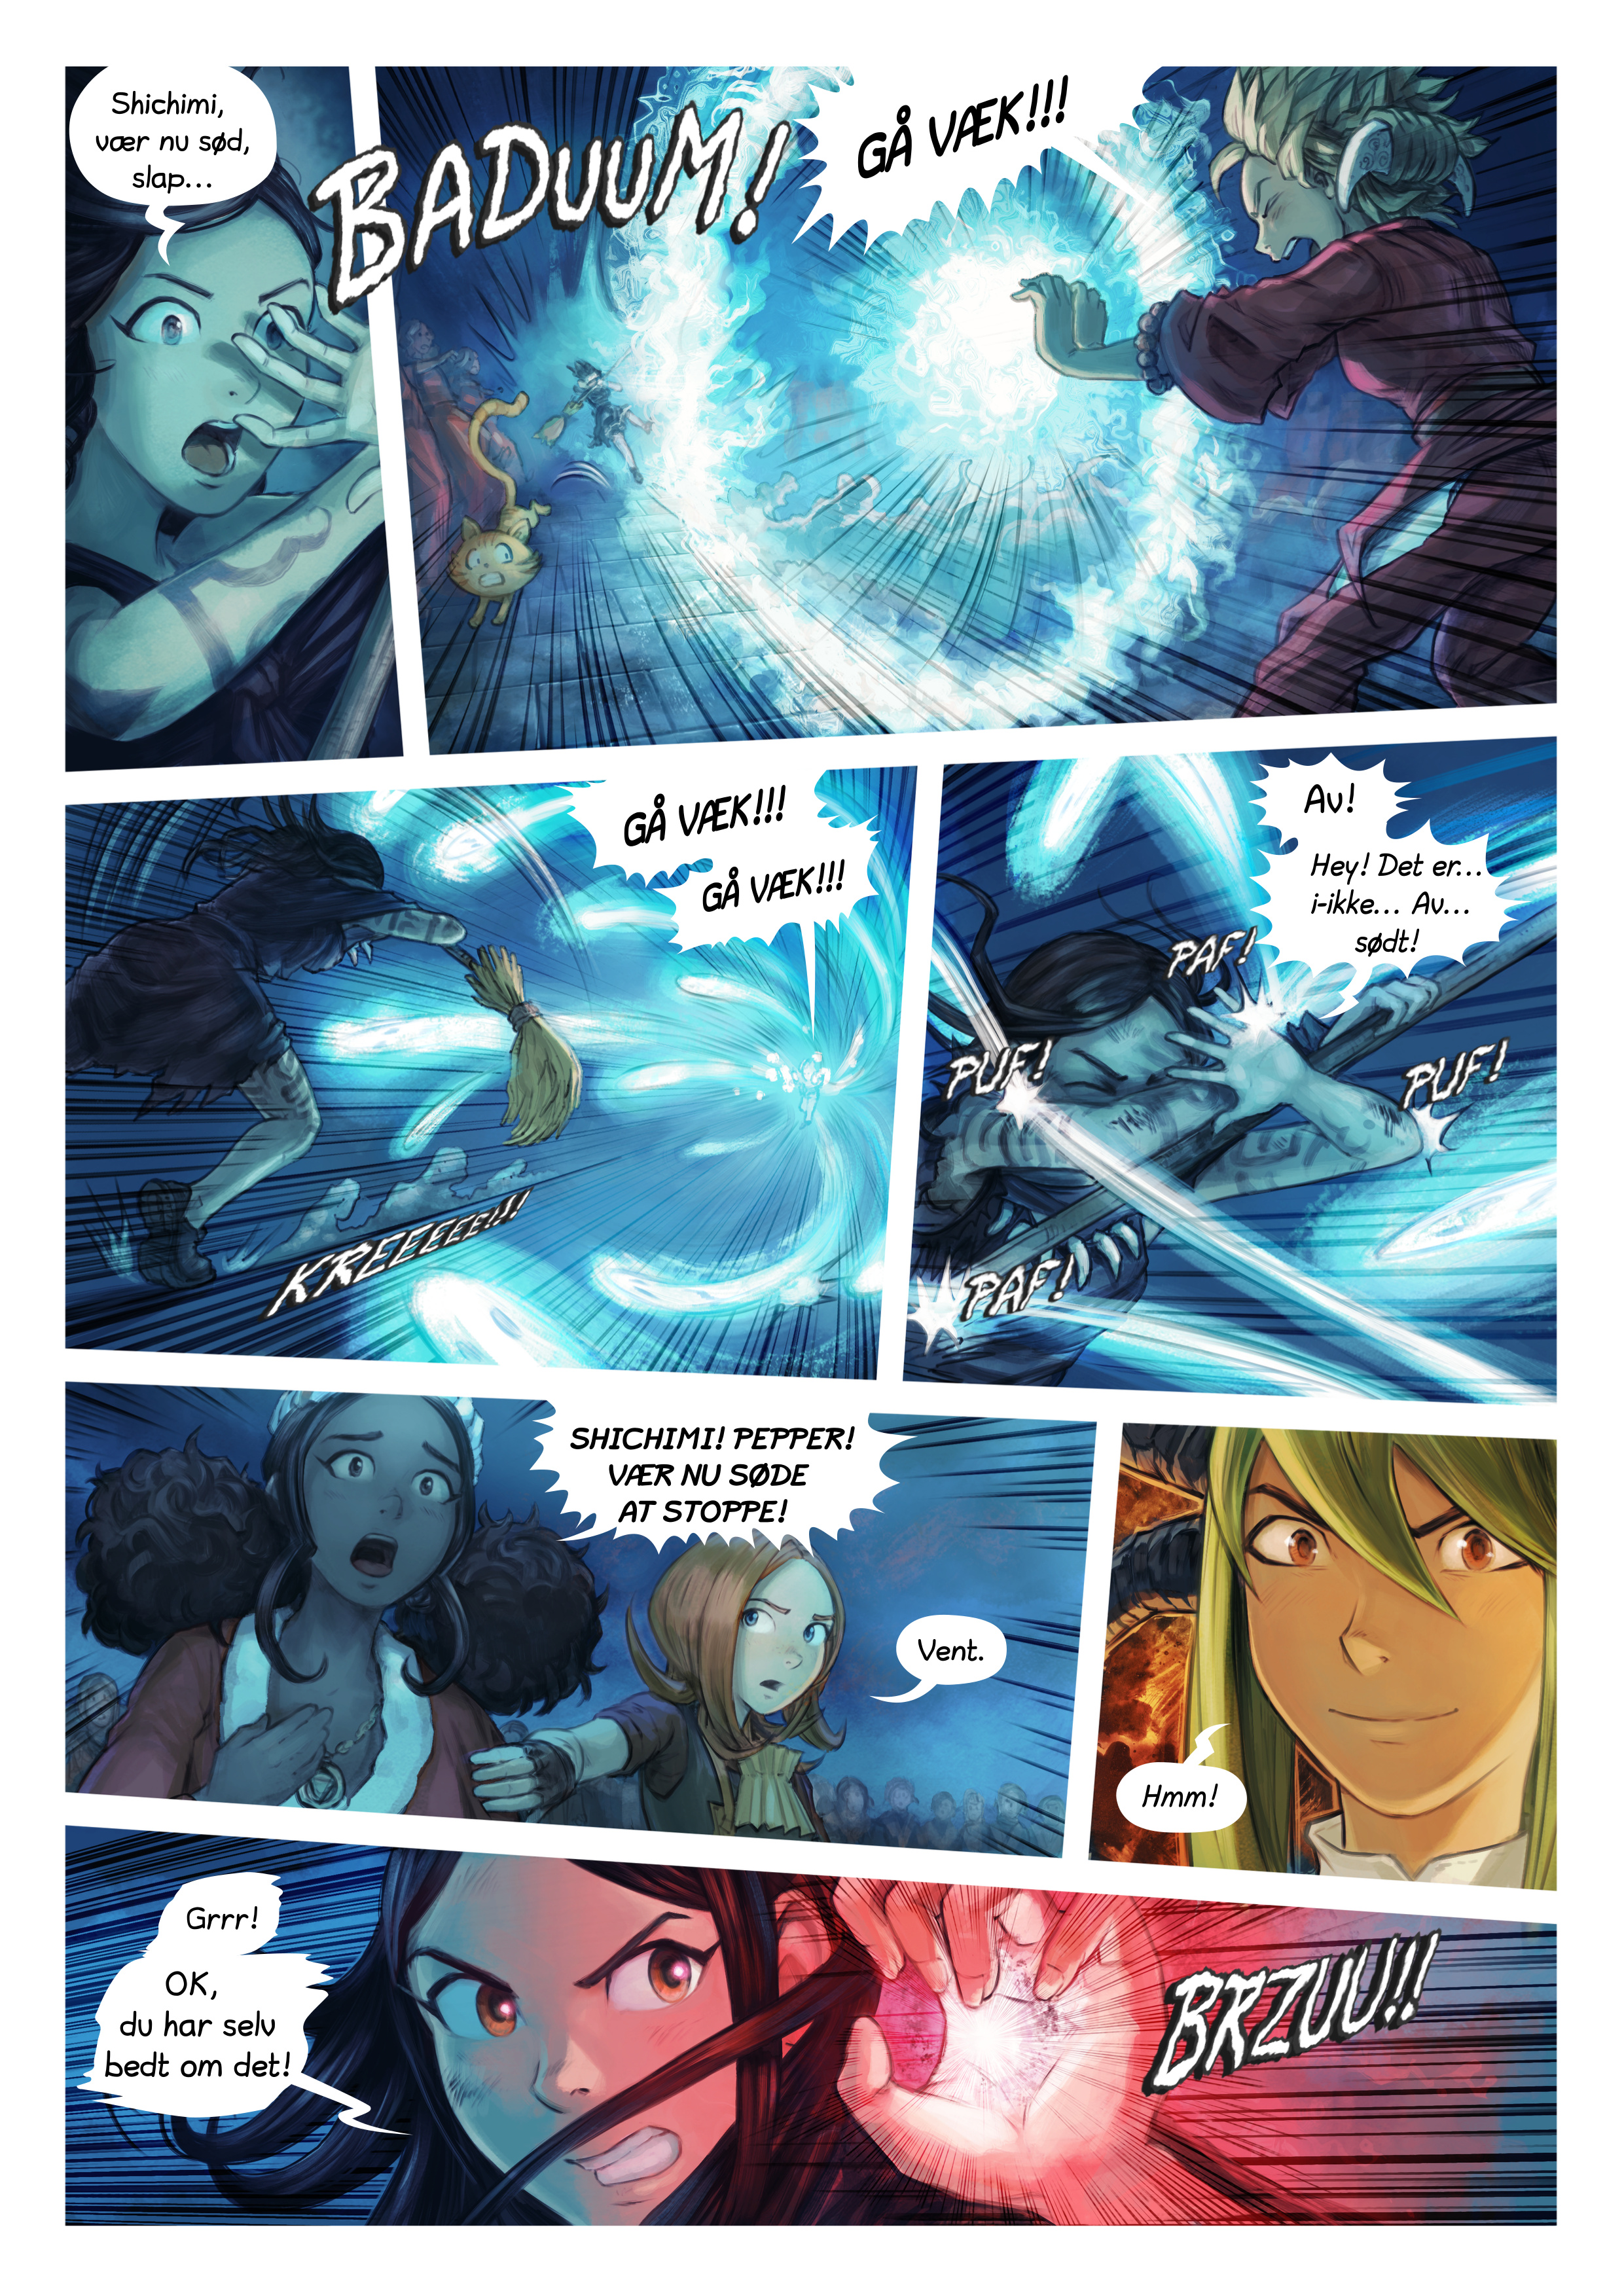 Episode 34: Shichimi slås til ridder, Page 6